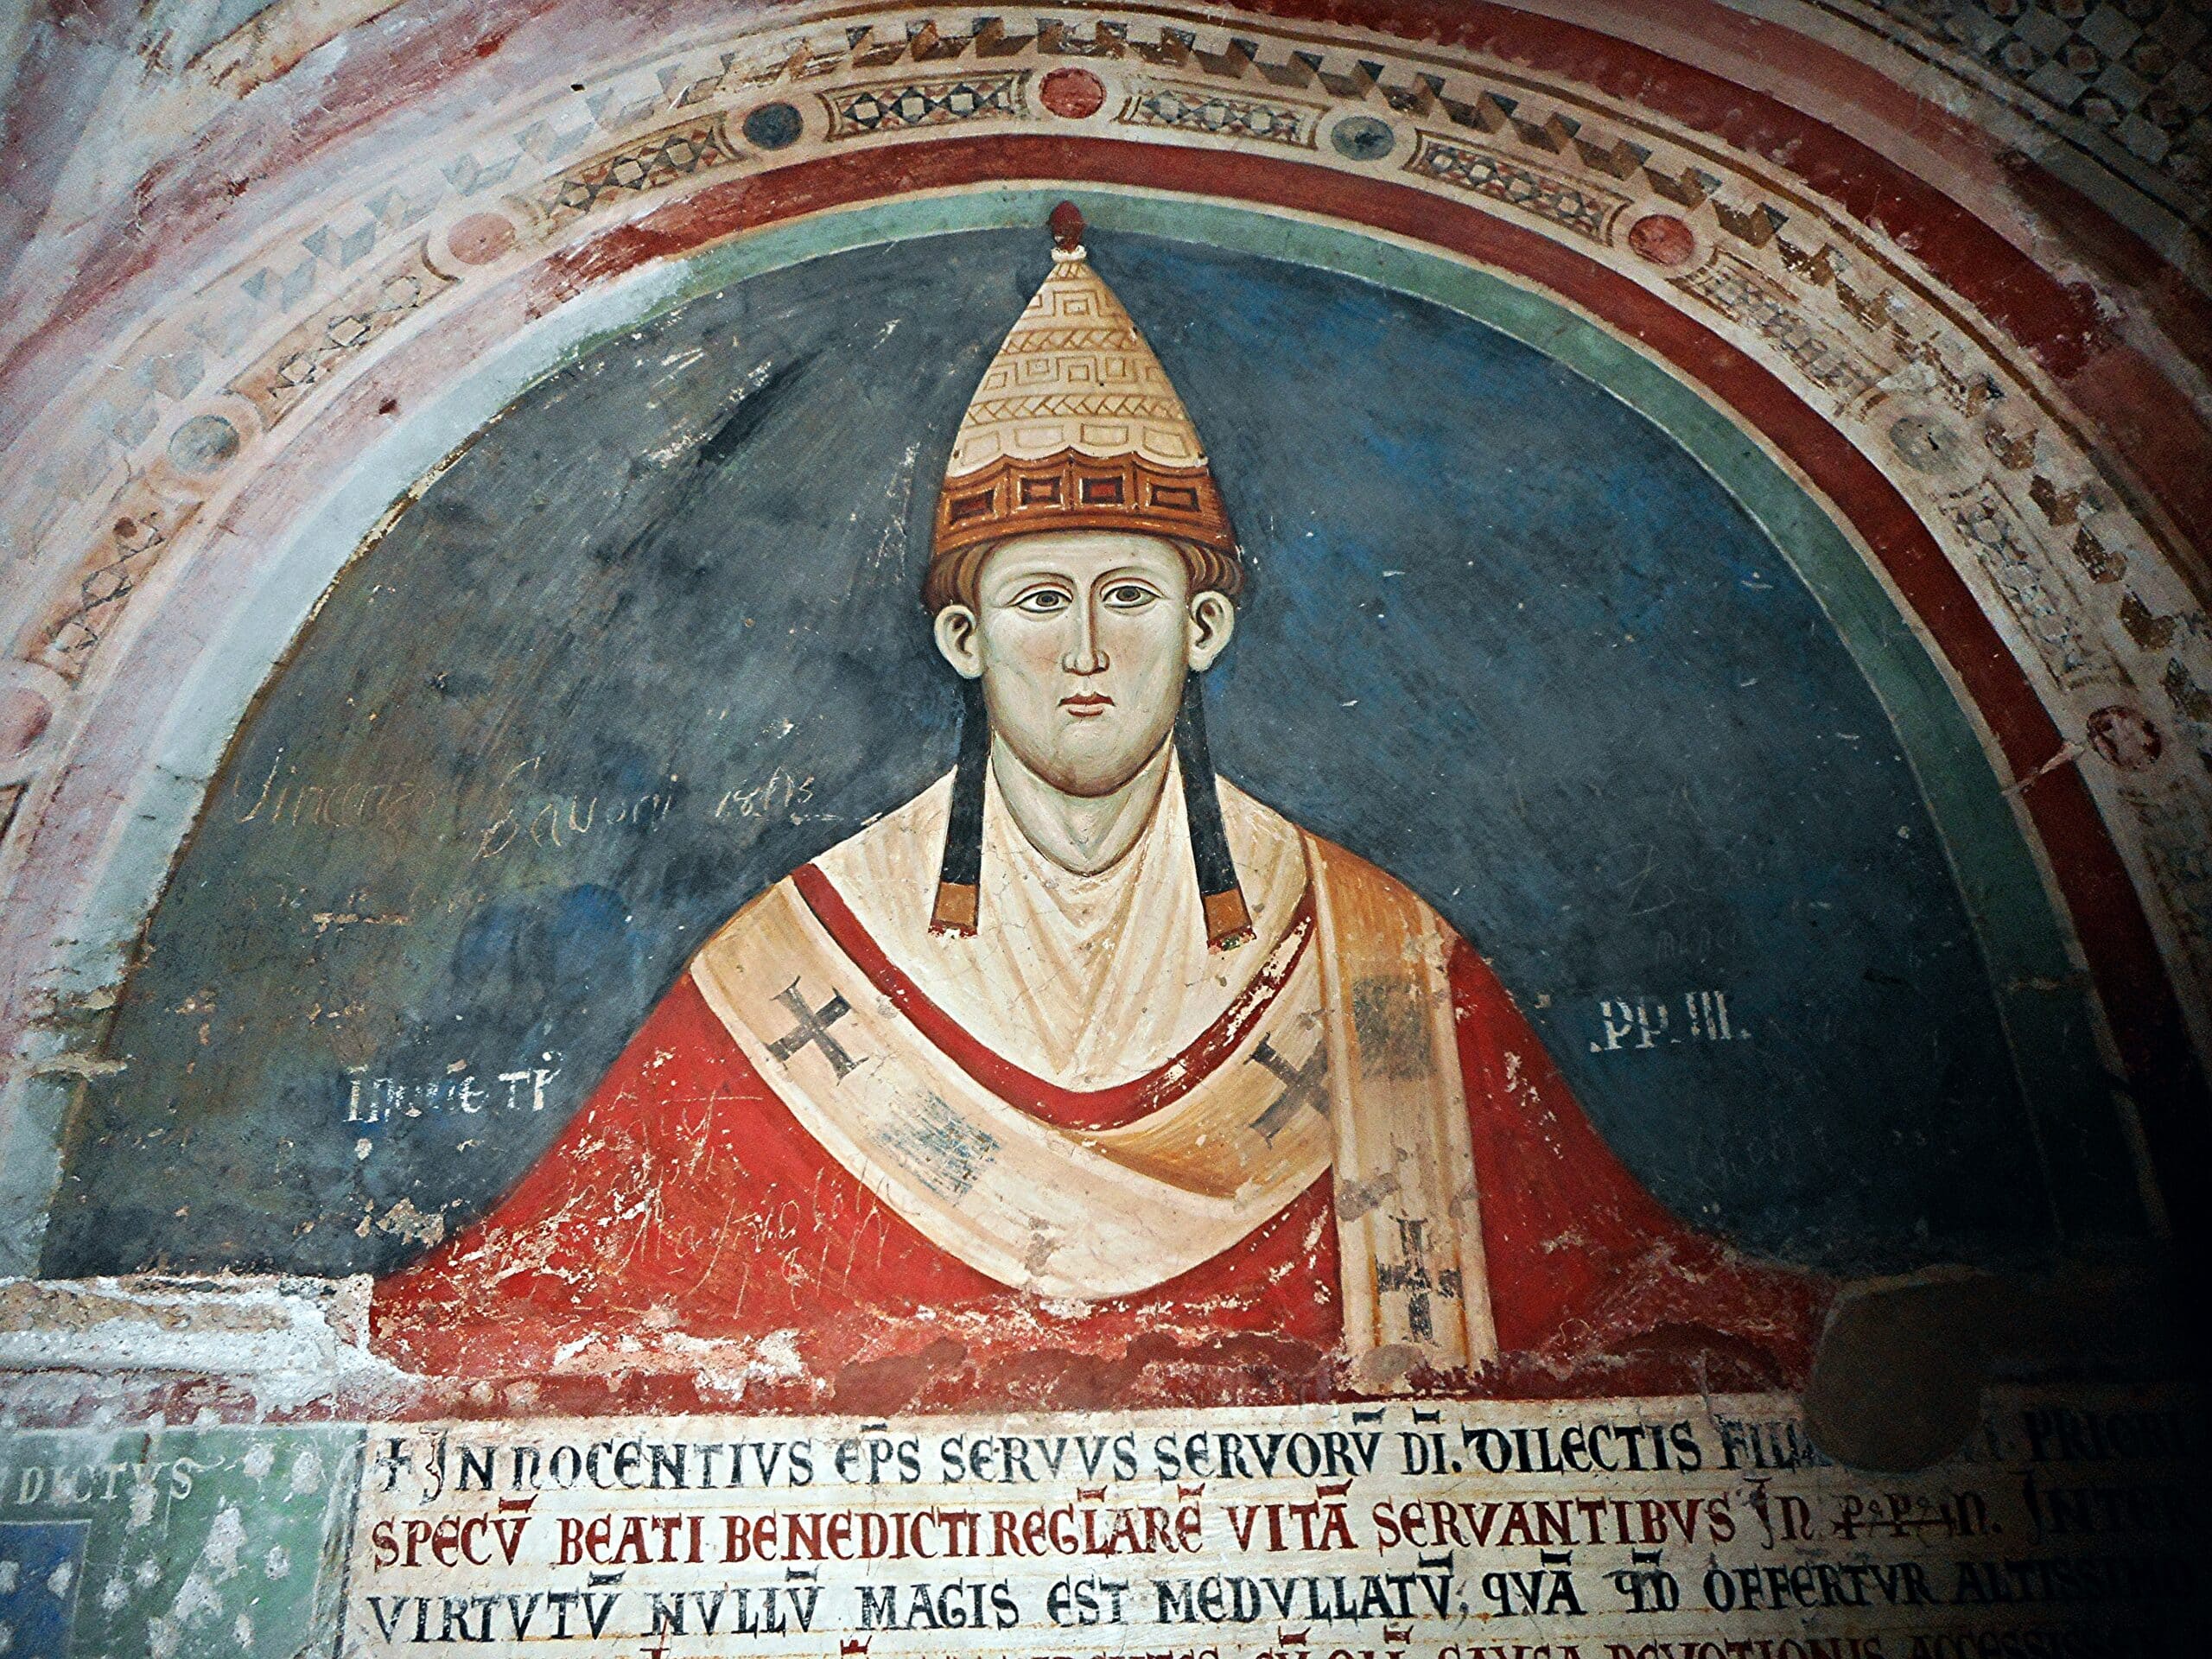 Le sens mystique de la liturgie : une édition des Mystères des messes d’Innocent III